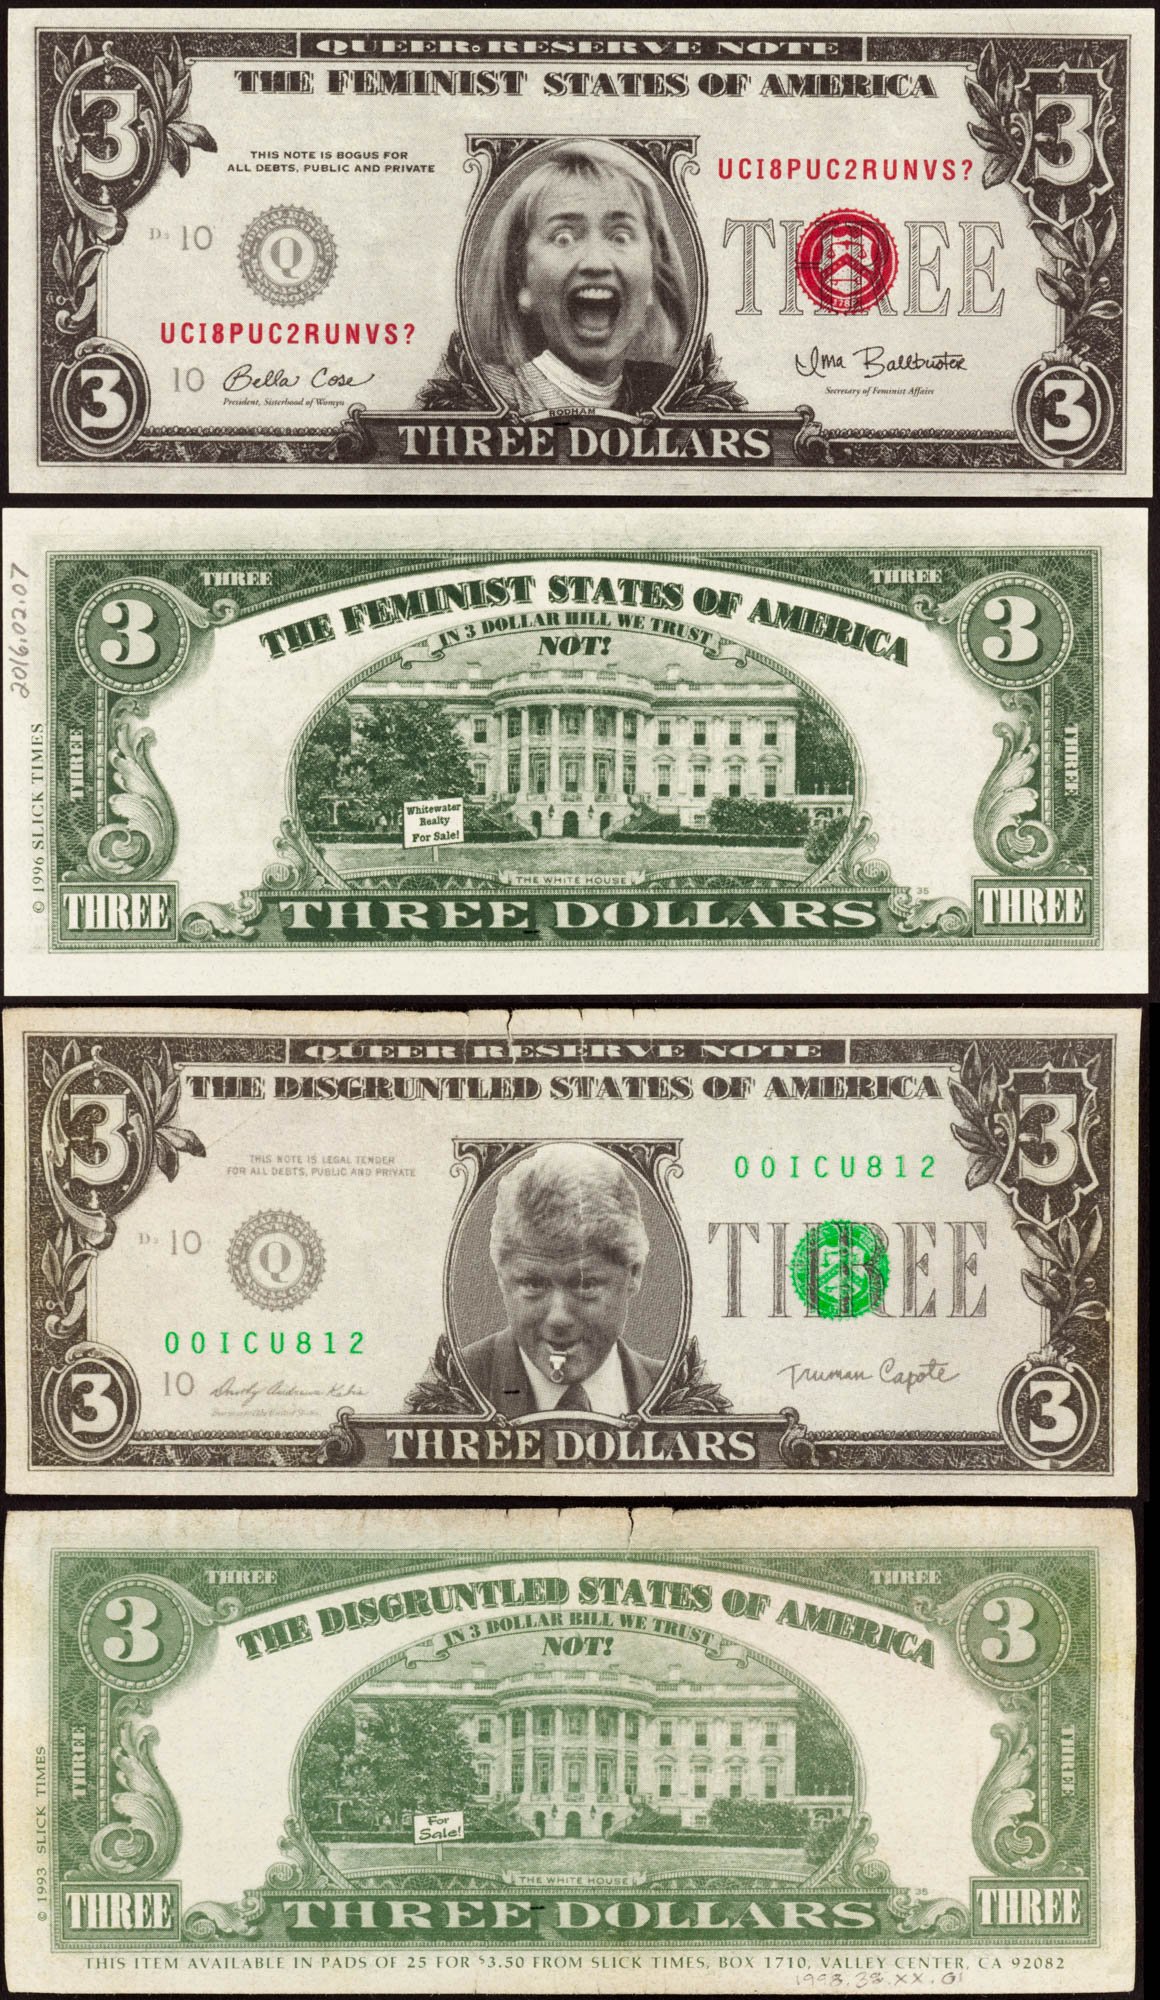 1993 President Bill Clinton $3 dollar bill Slick Times Novelty